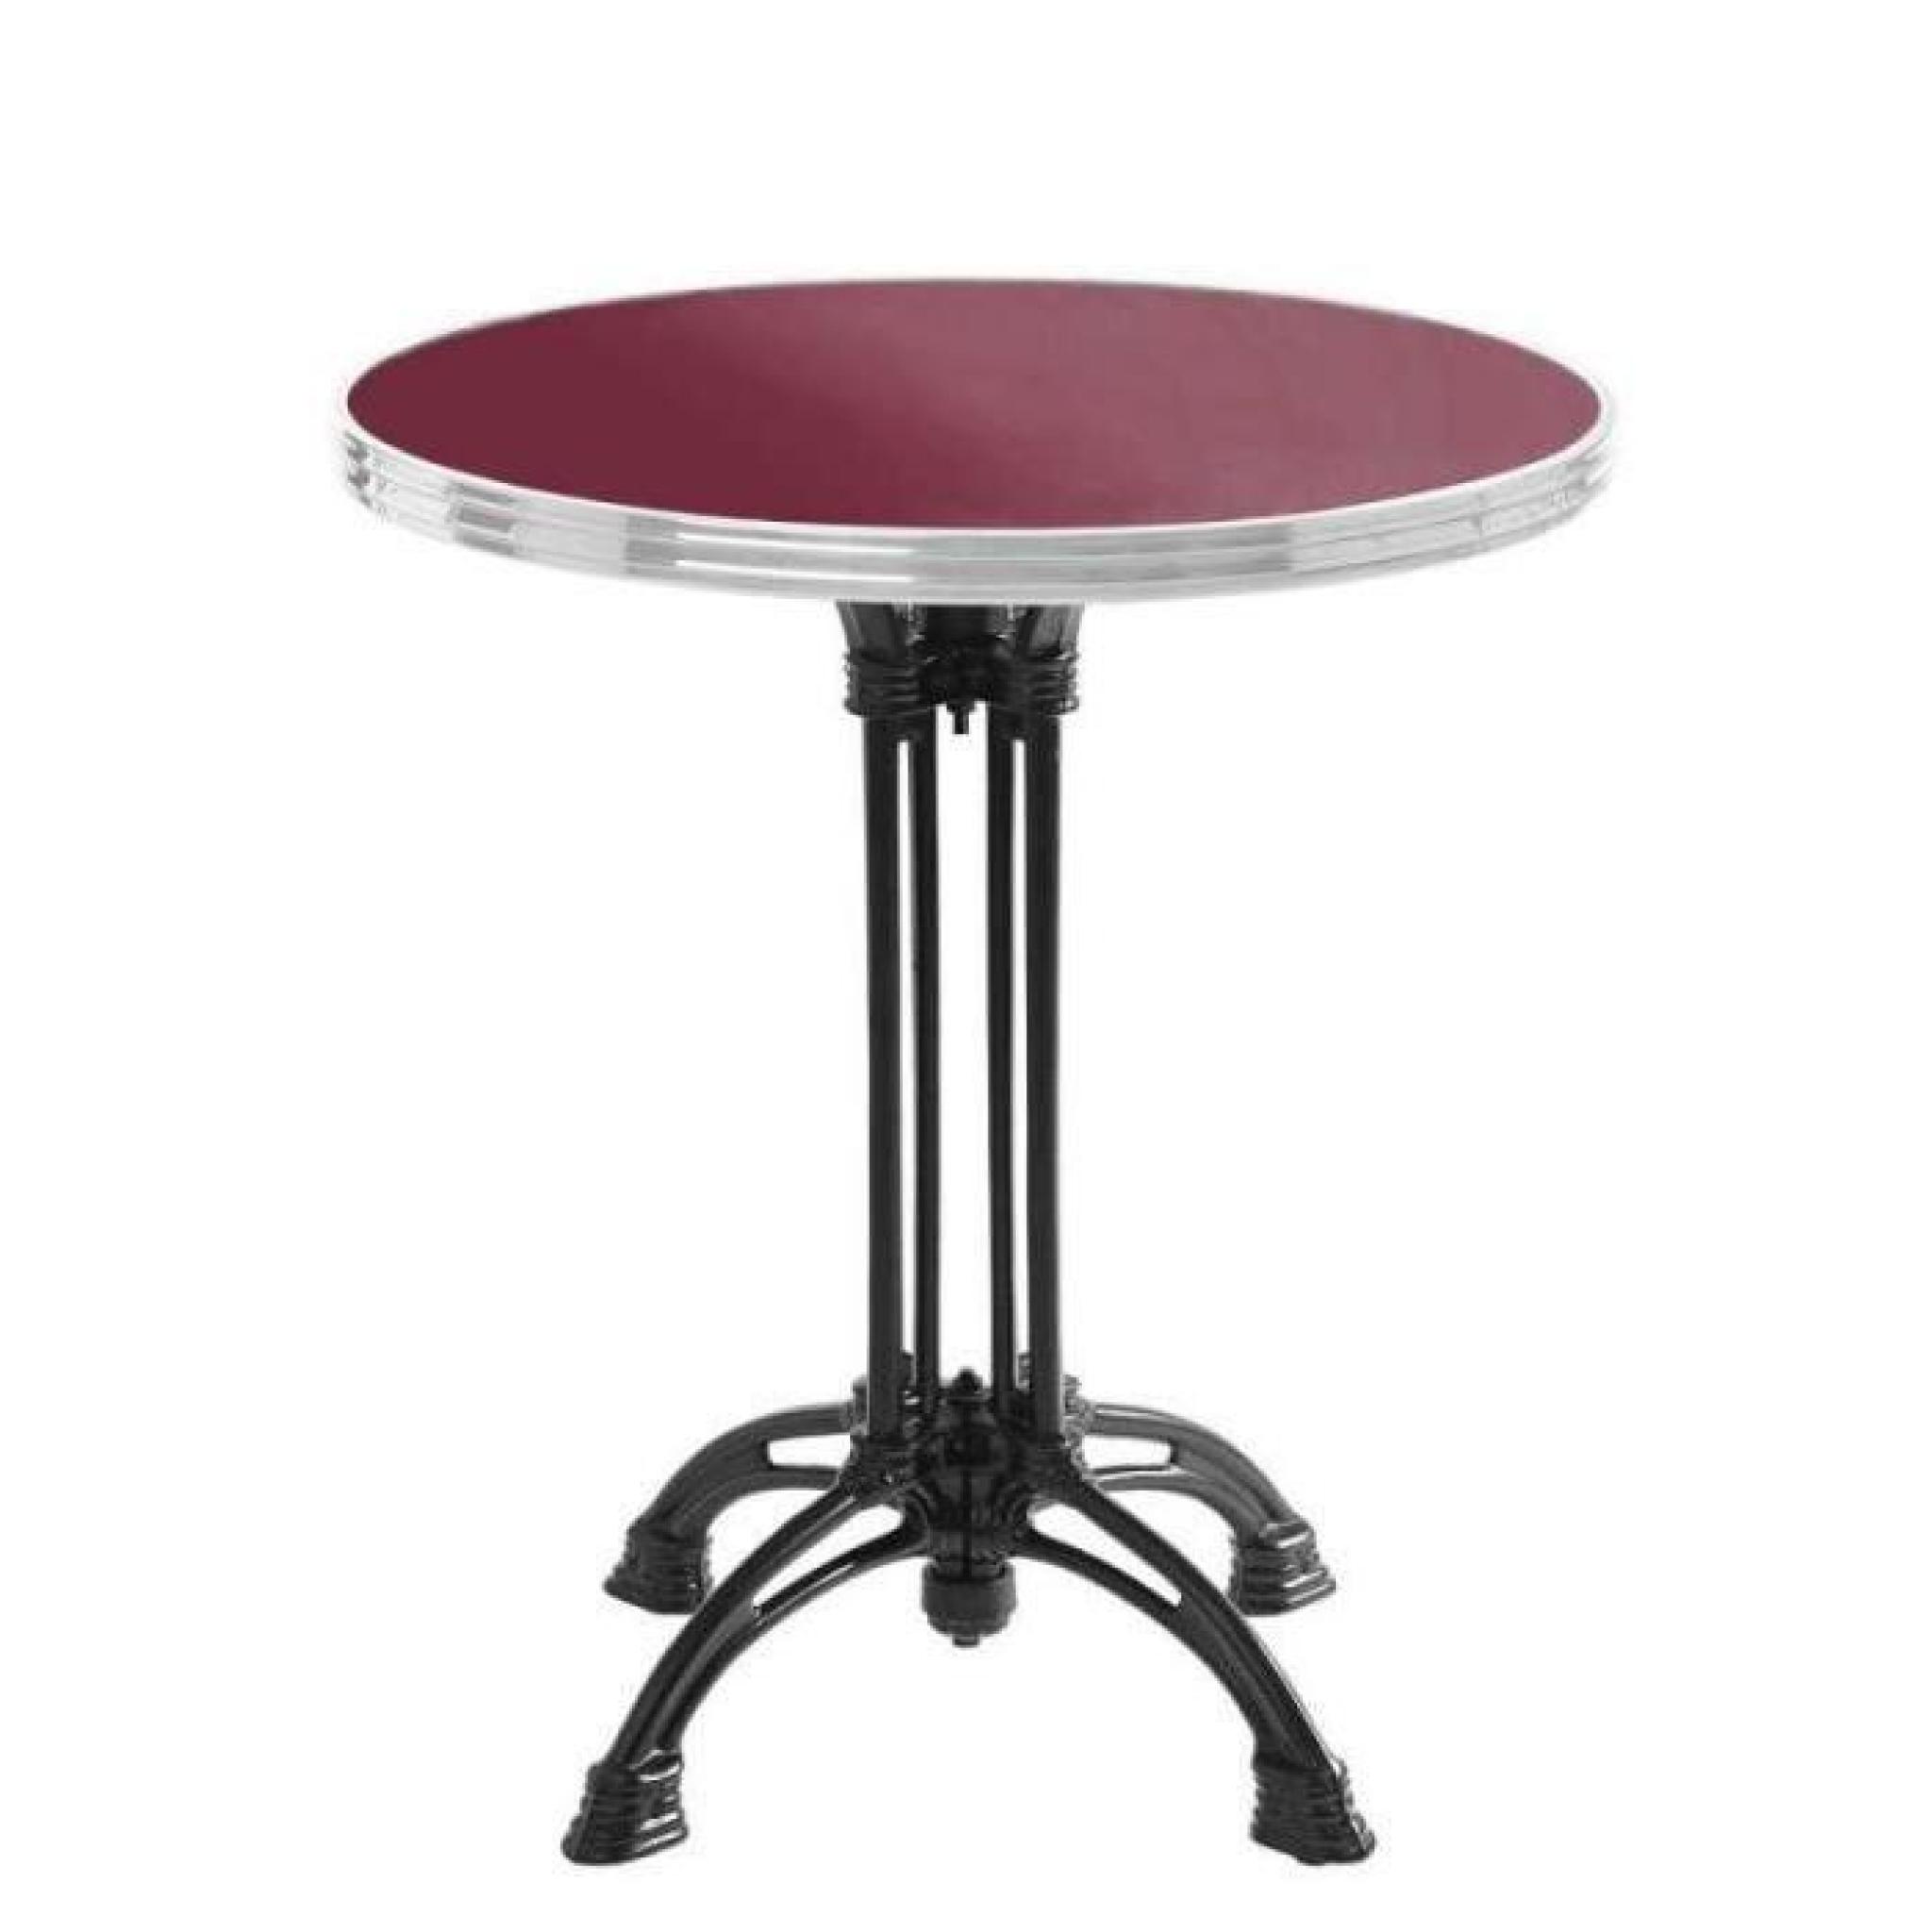 table bistrot ronde rouge avec cerclage en inox - pied eiffel 3 branches - h70 x d70 cm